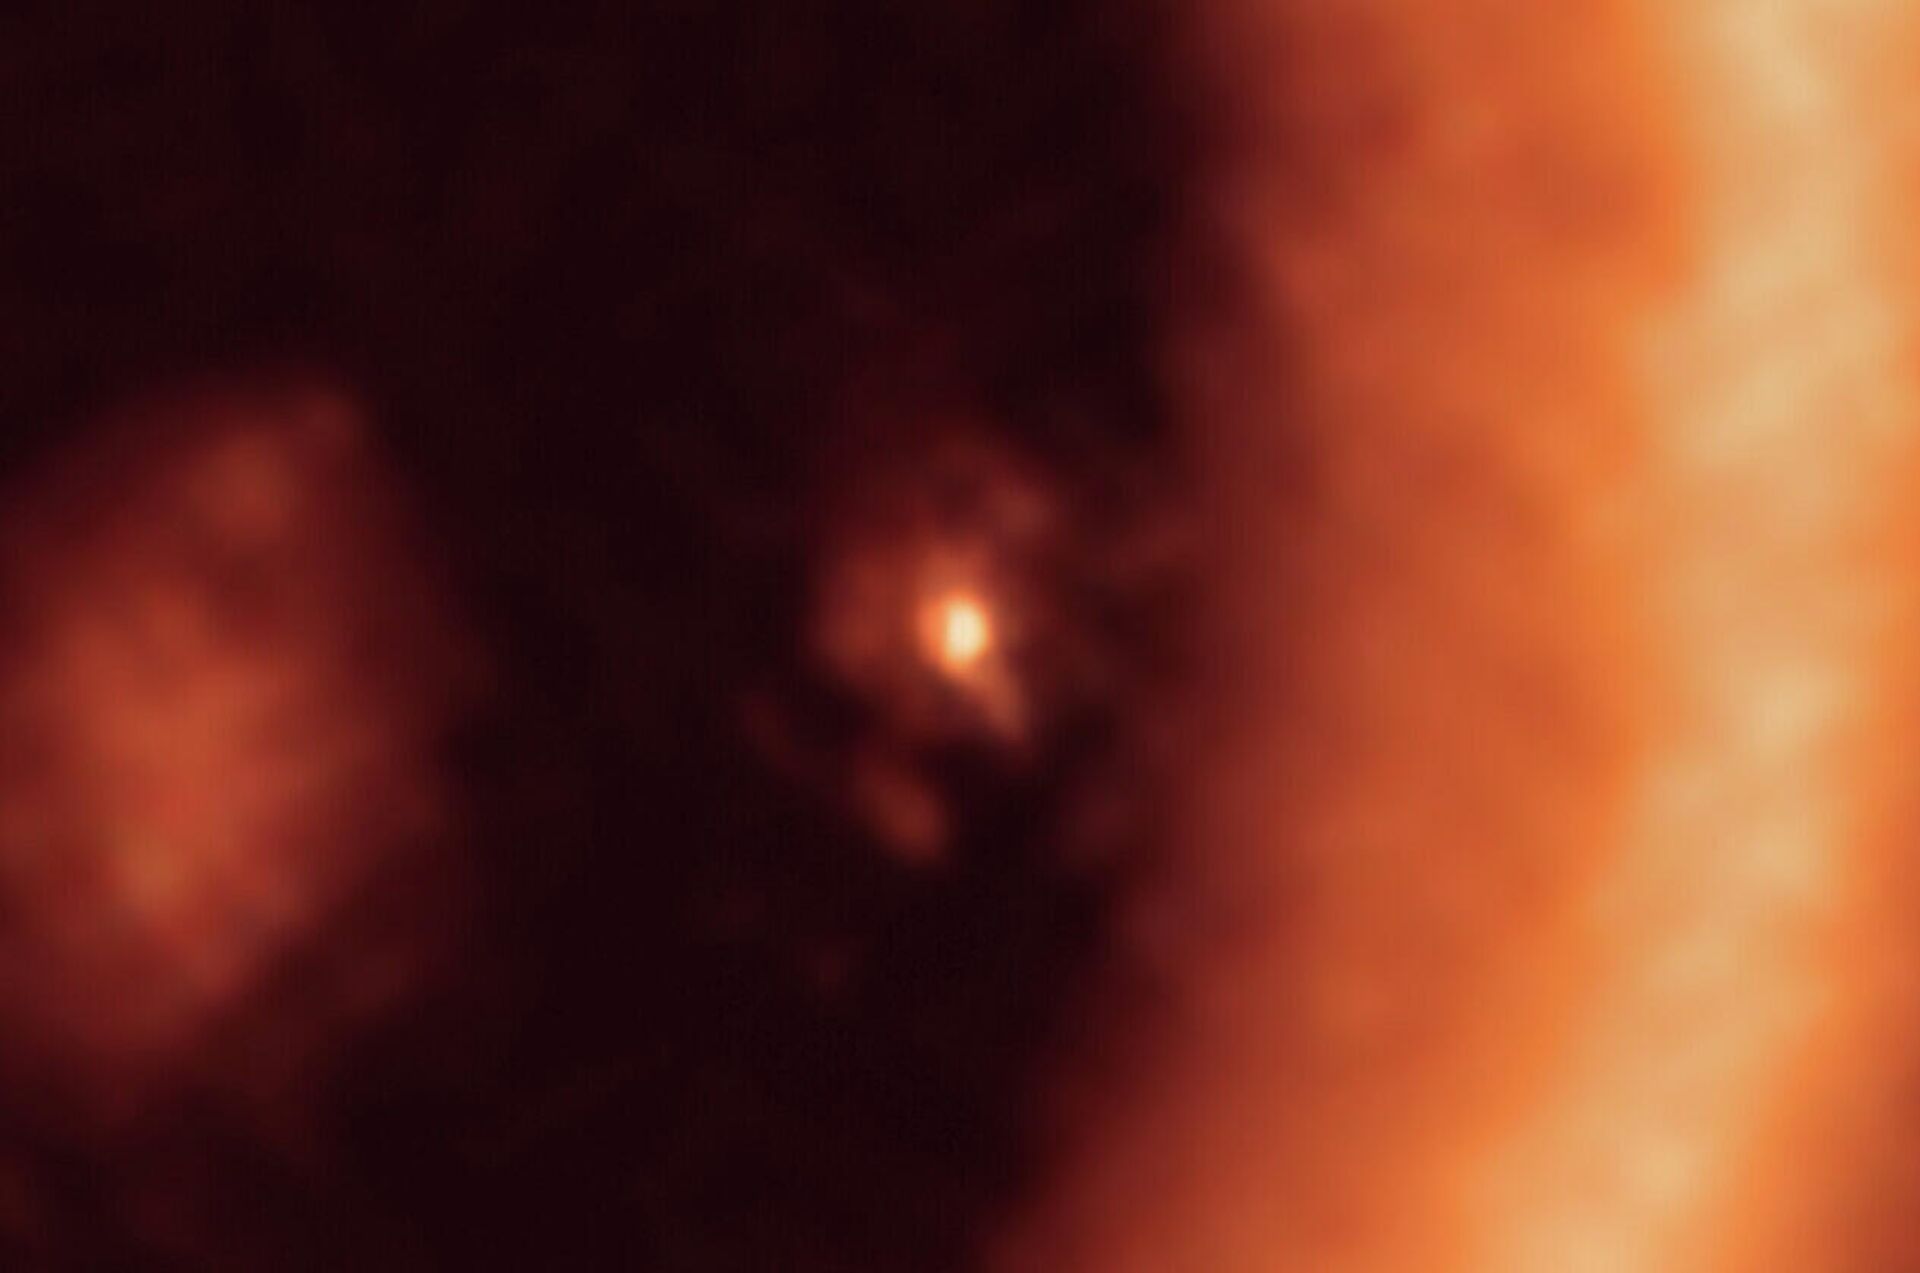 El disco circumplanetario que rodea al exoplaneta PDS 70c - Sputnik Mundo, 1920, 23.07.2021